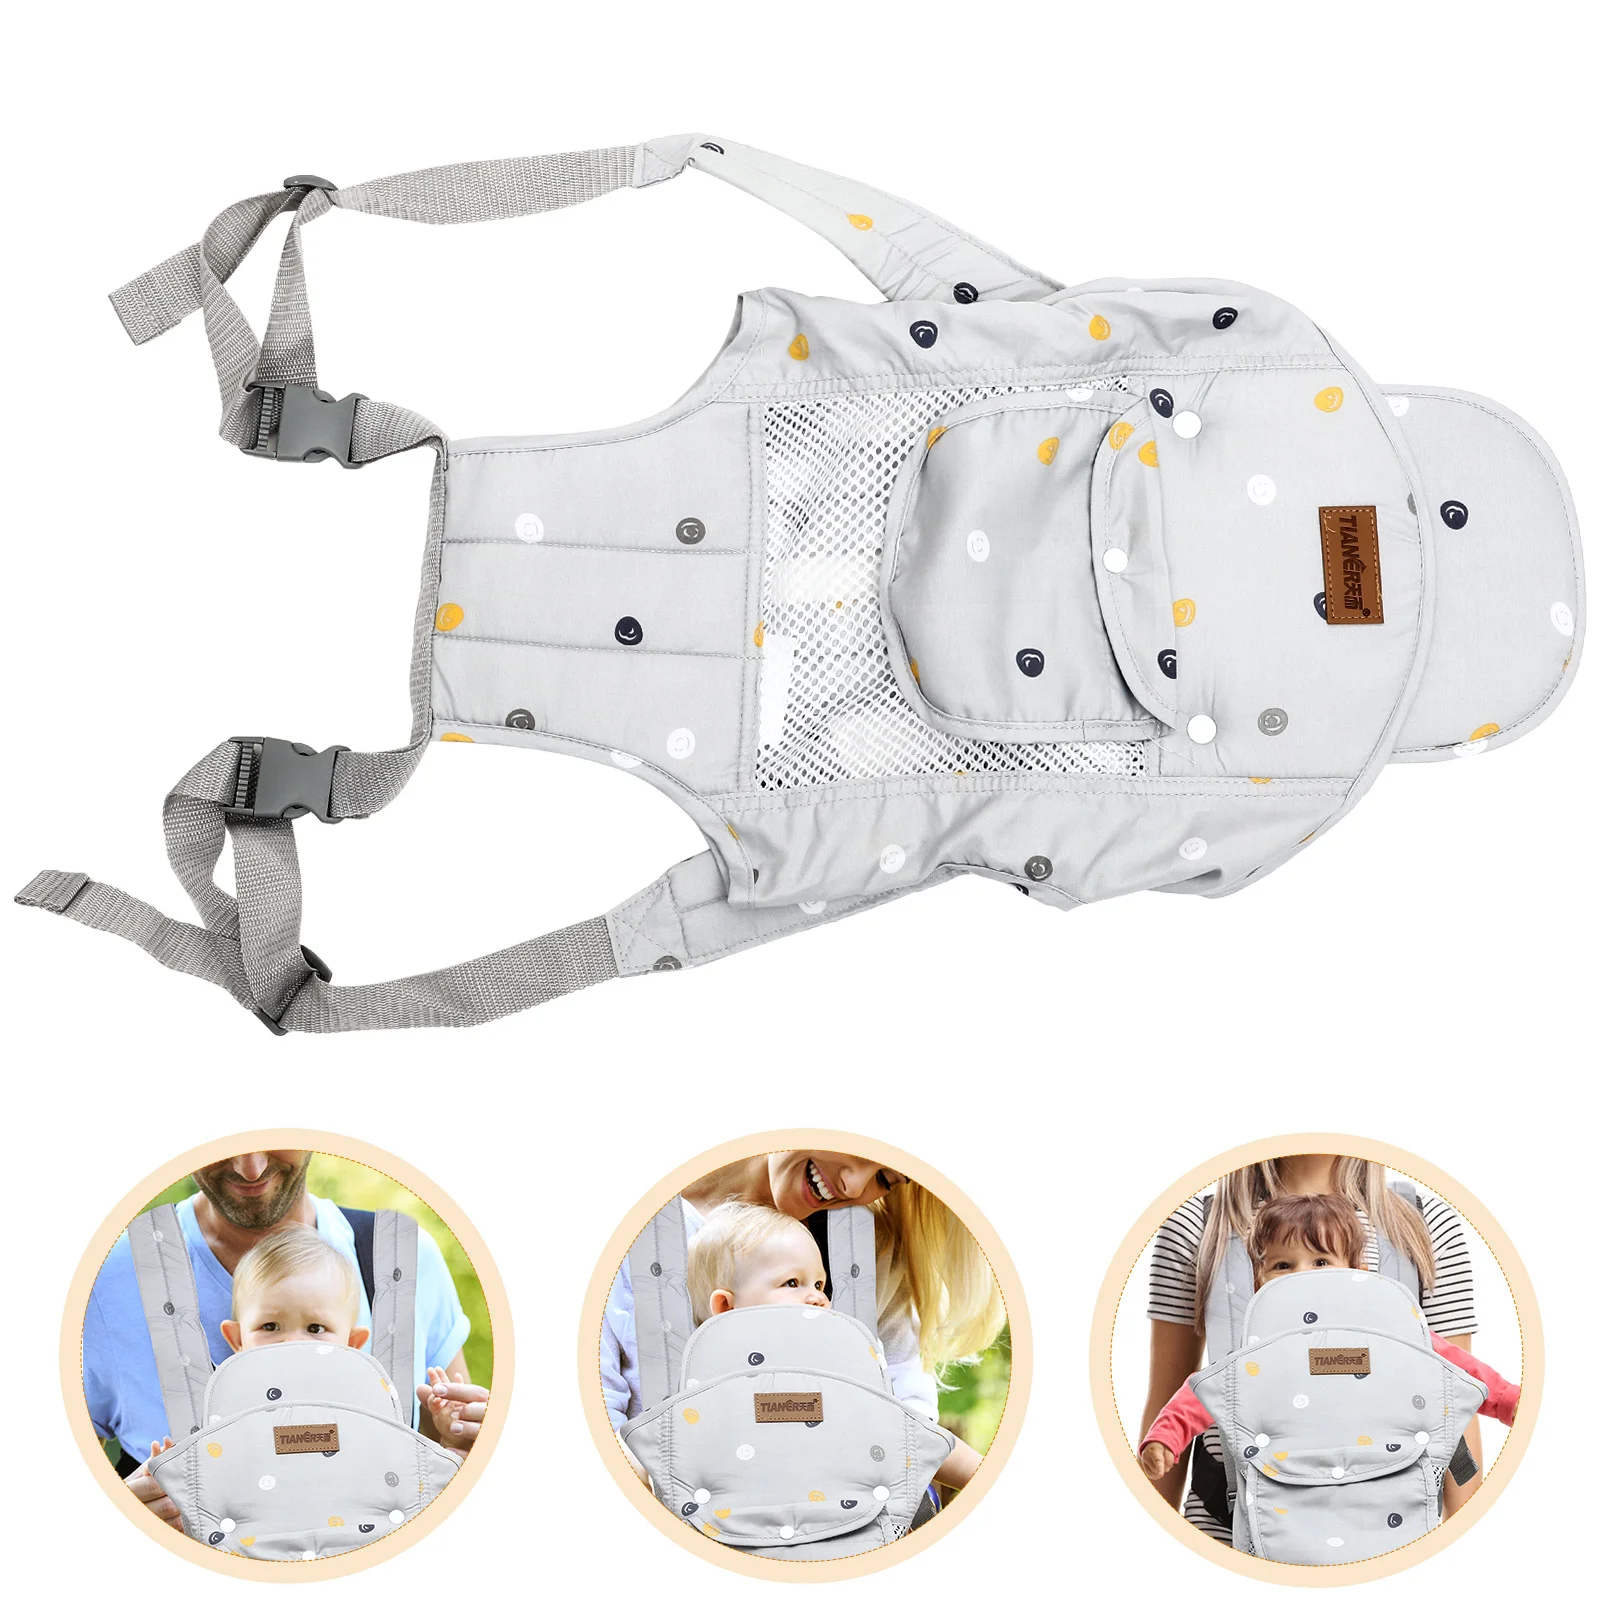 

Удобная переноска для новорожденных Zhaoqing, слинг для младенцев, передняя и задняя дышащие сетчатые переноски для младенцев, подтяжки премиум-класса